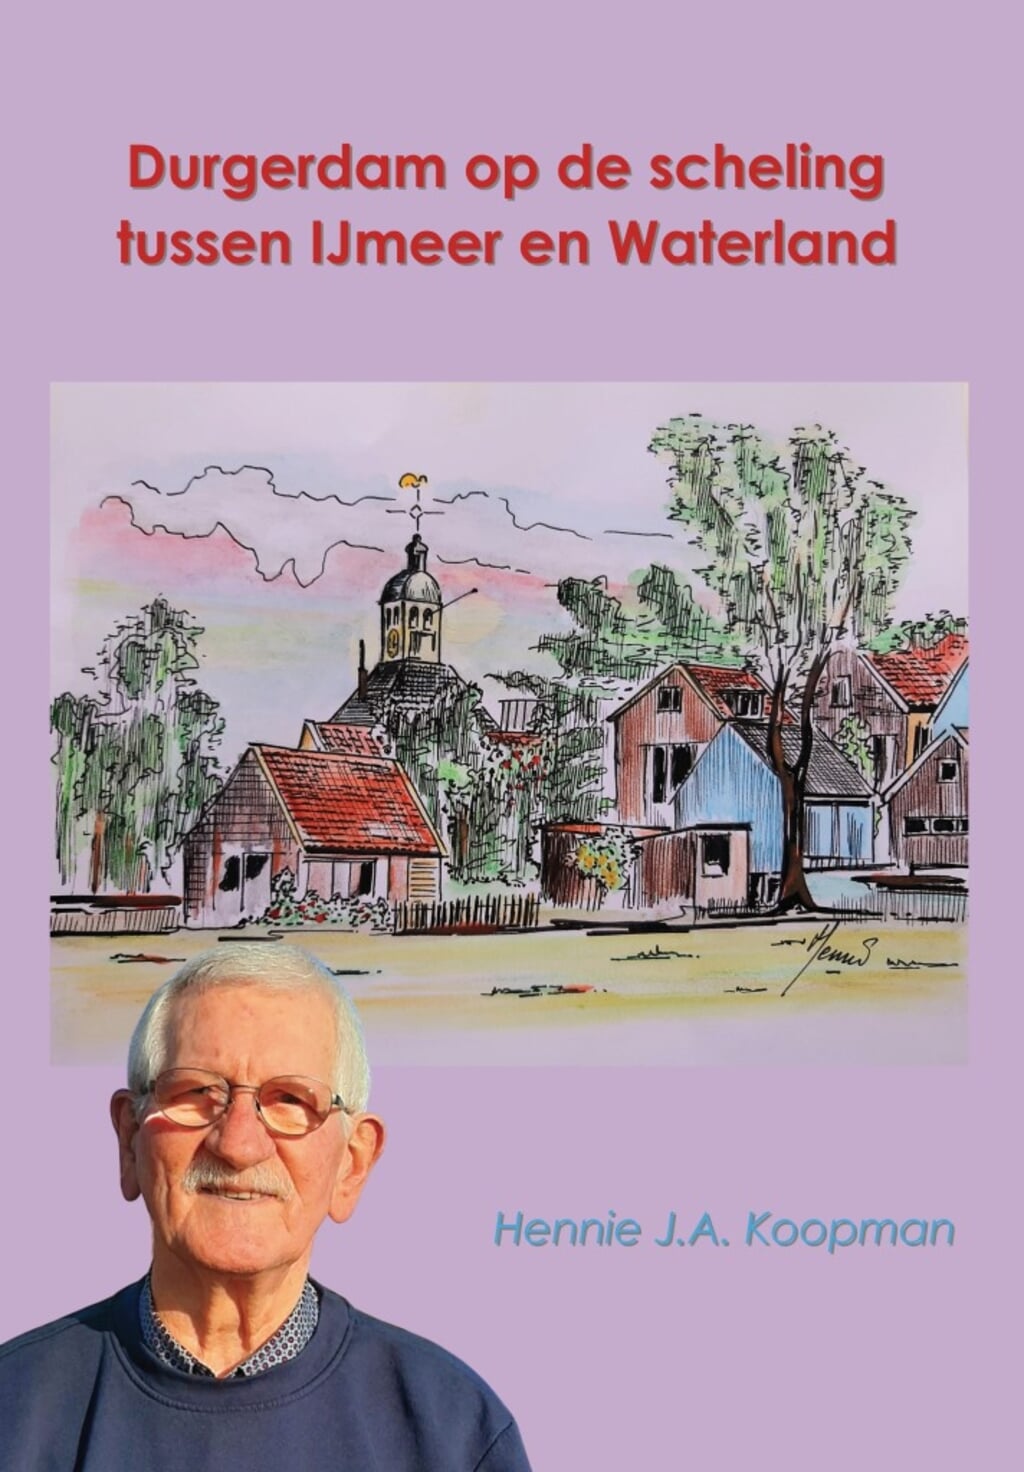 De cover van het boek van Hennie Koopman.